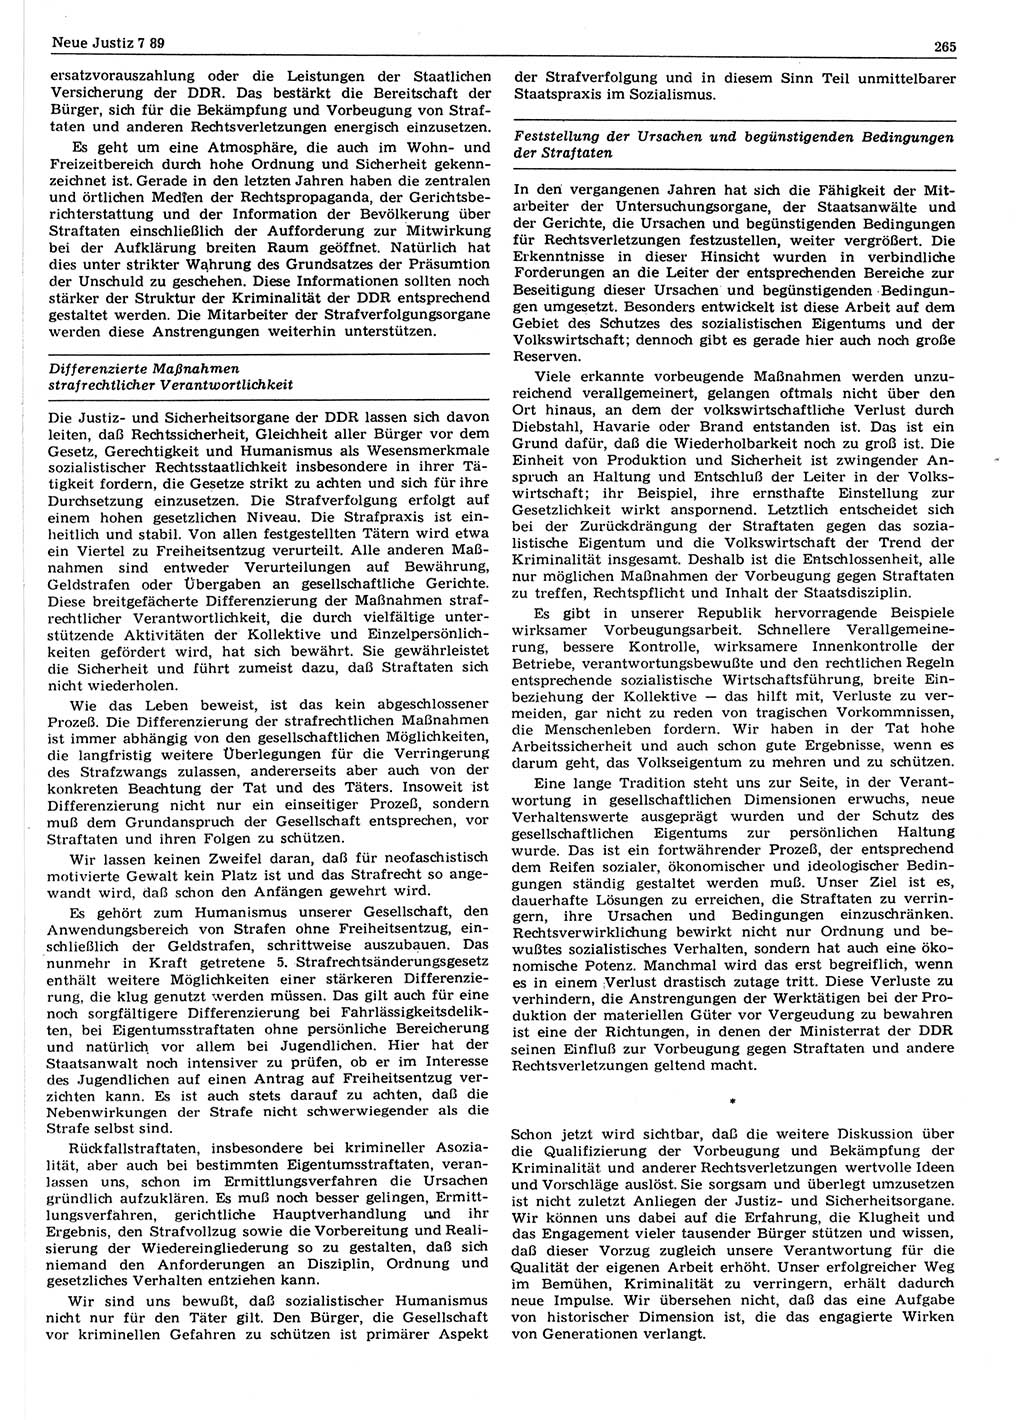 Neue Justiz (NJ), Zeitschrift für sozialistisches Recht und Gesetzlichkeit [Deutsche Demokratische Republik (DDR)], 43. Jahrgang 1989, Seite 265 (NJ DDR 1989, S. 265)